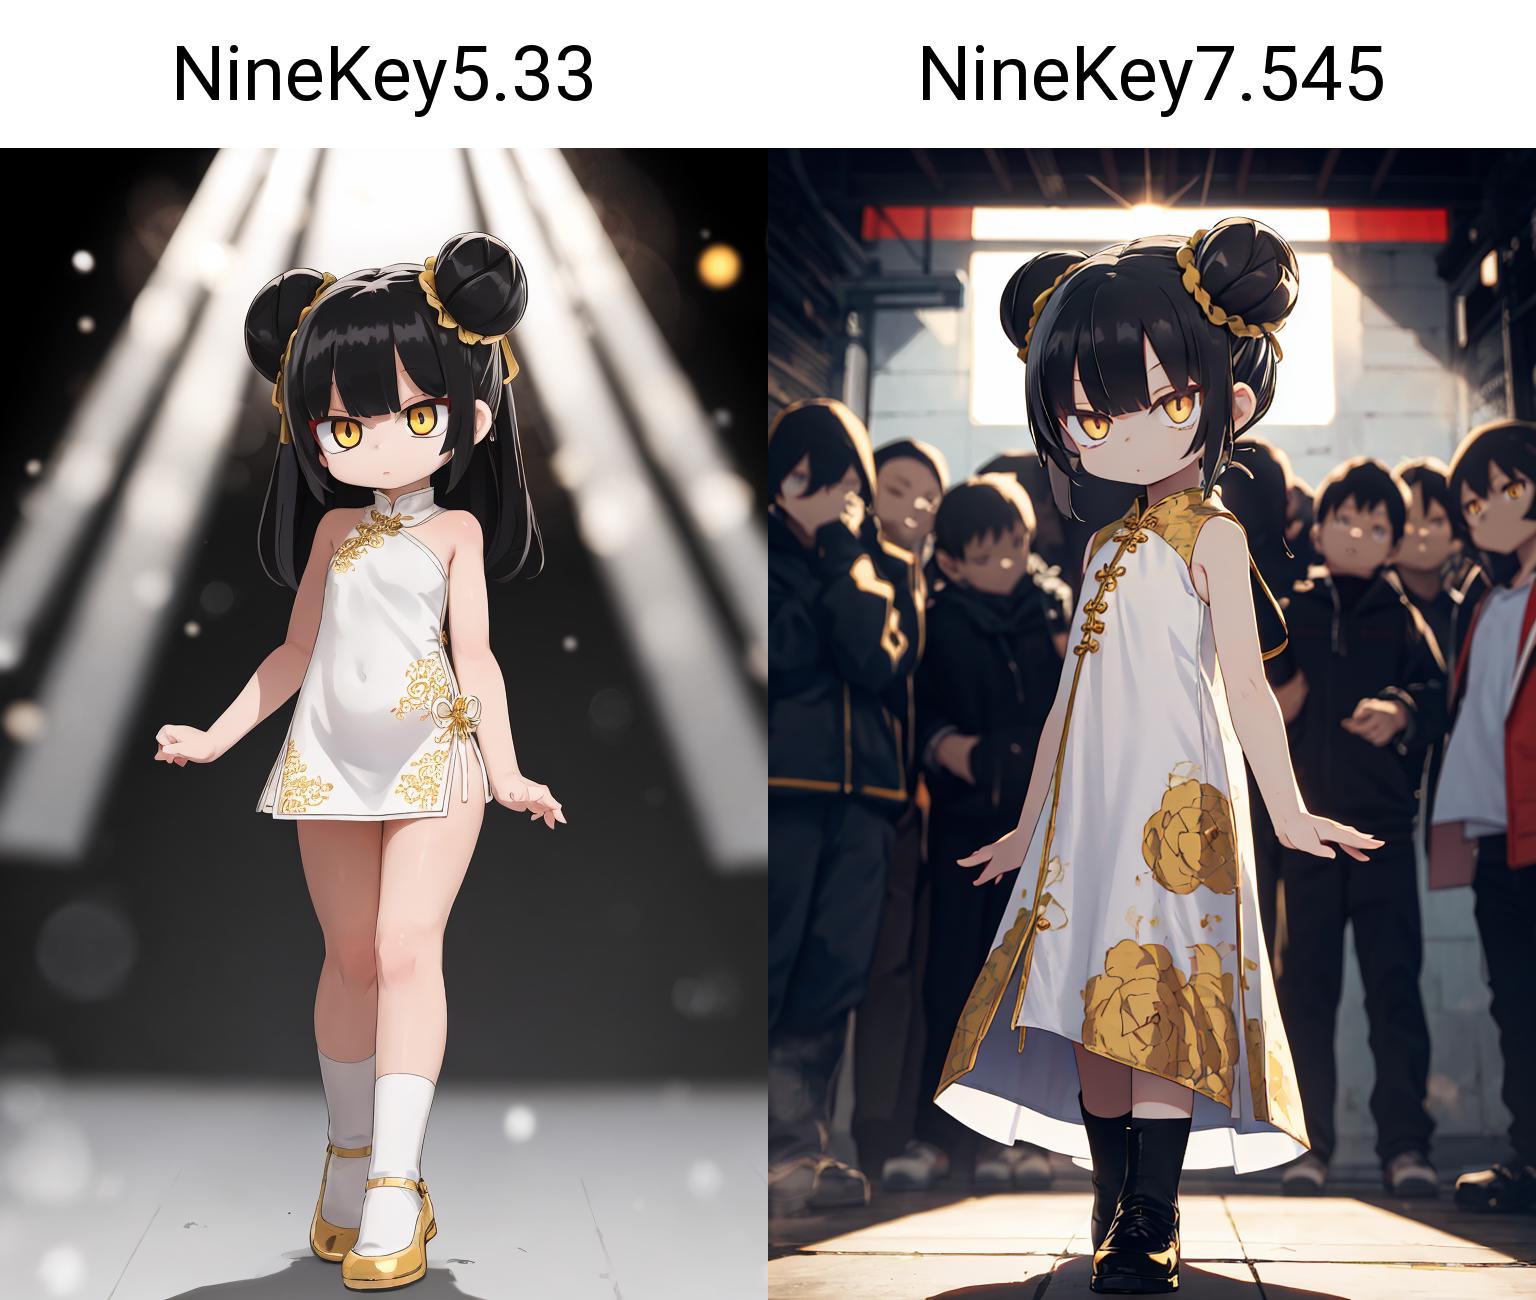 NineKeyMIX7 image by ninekey